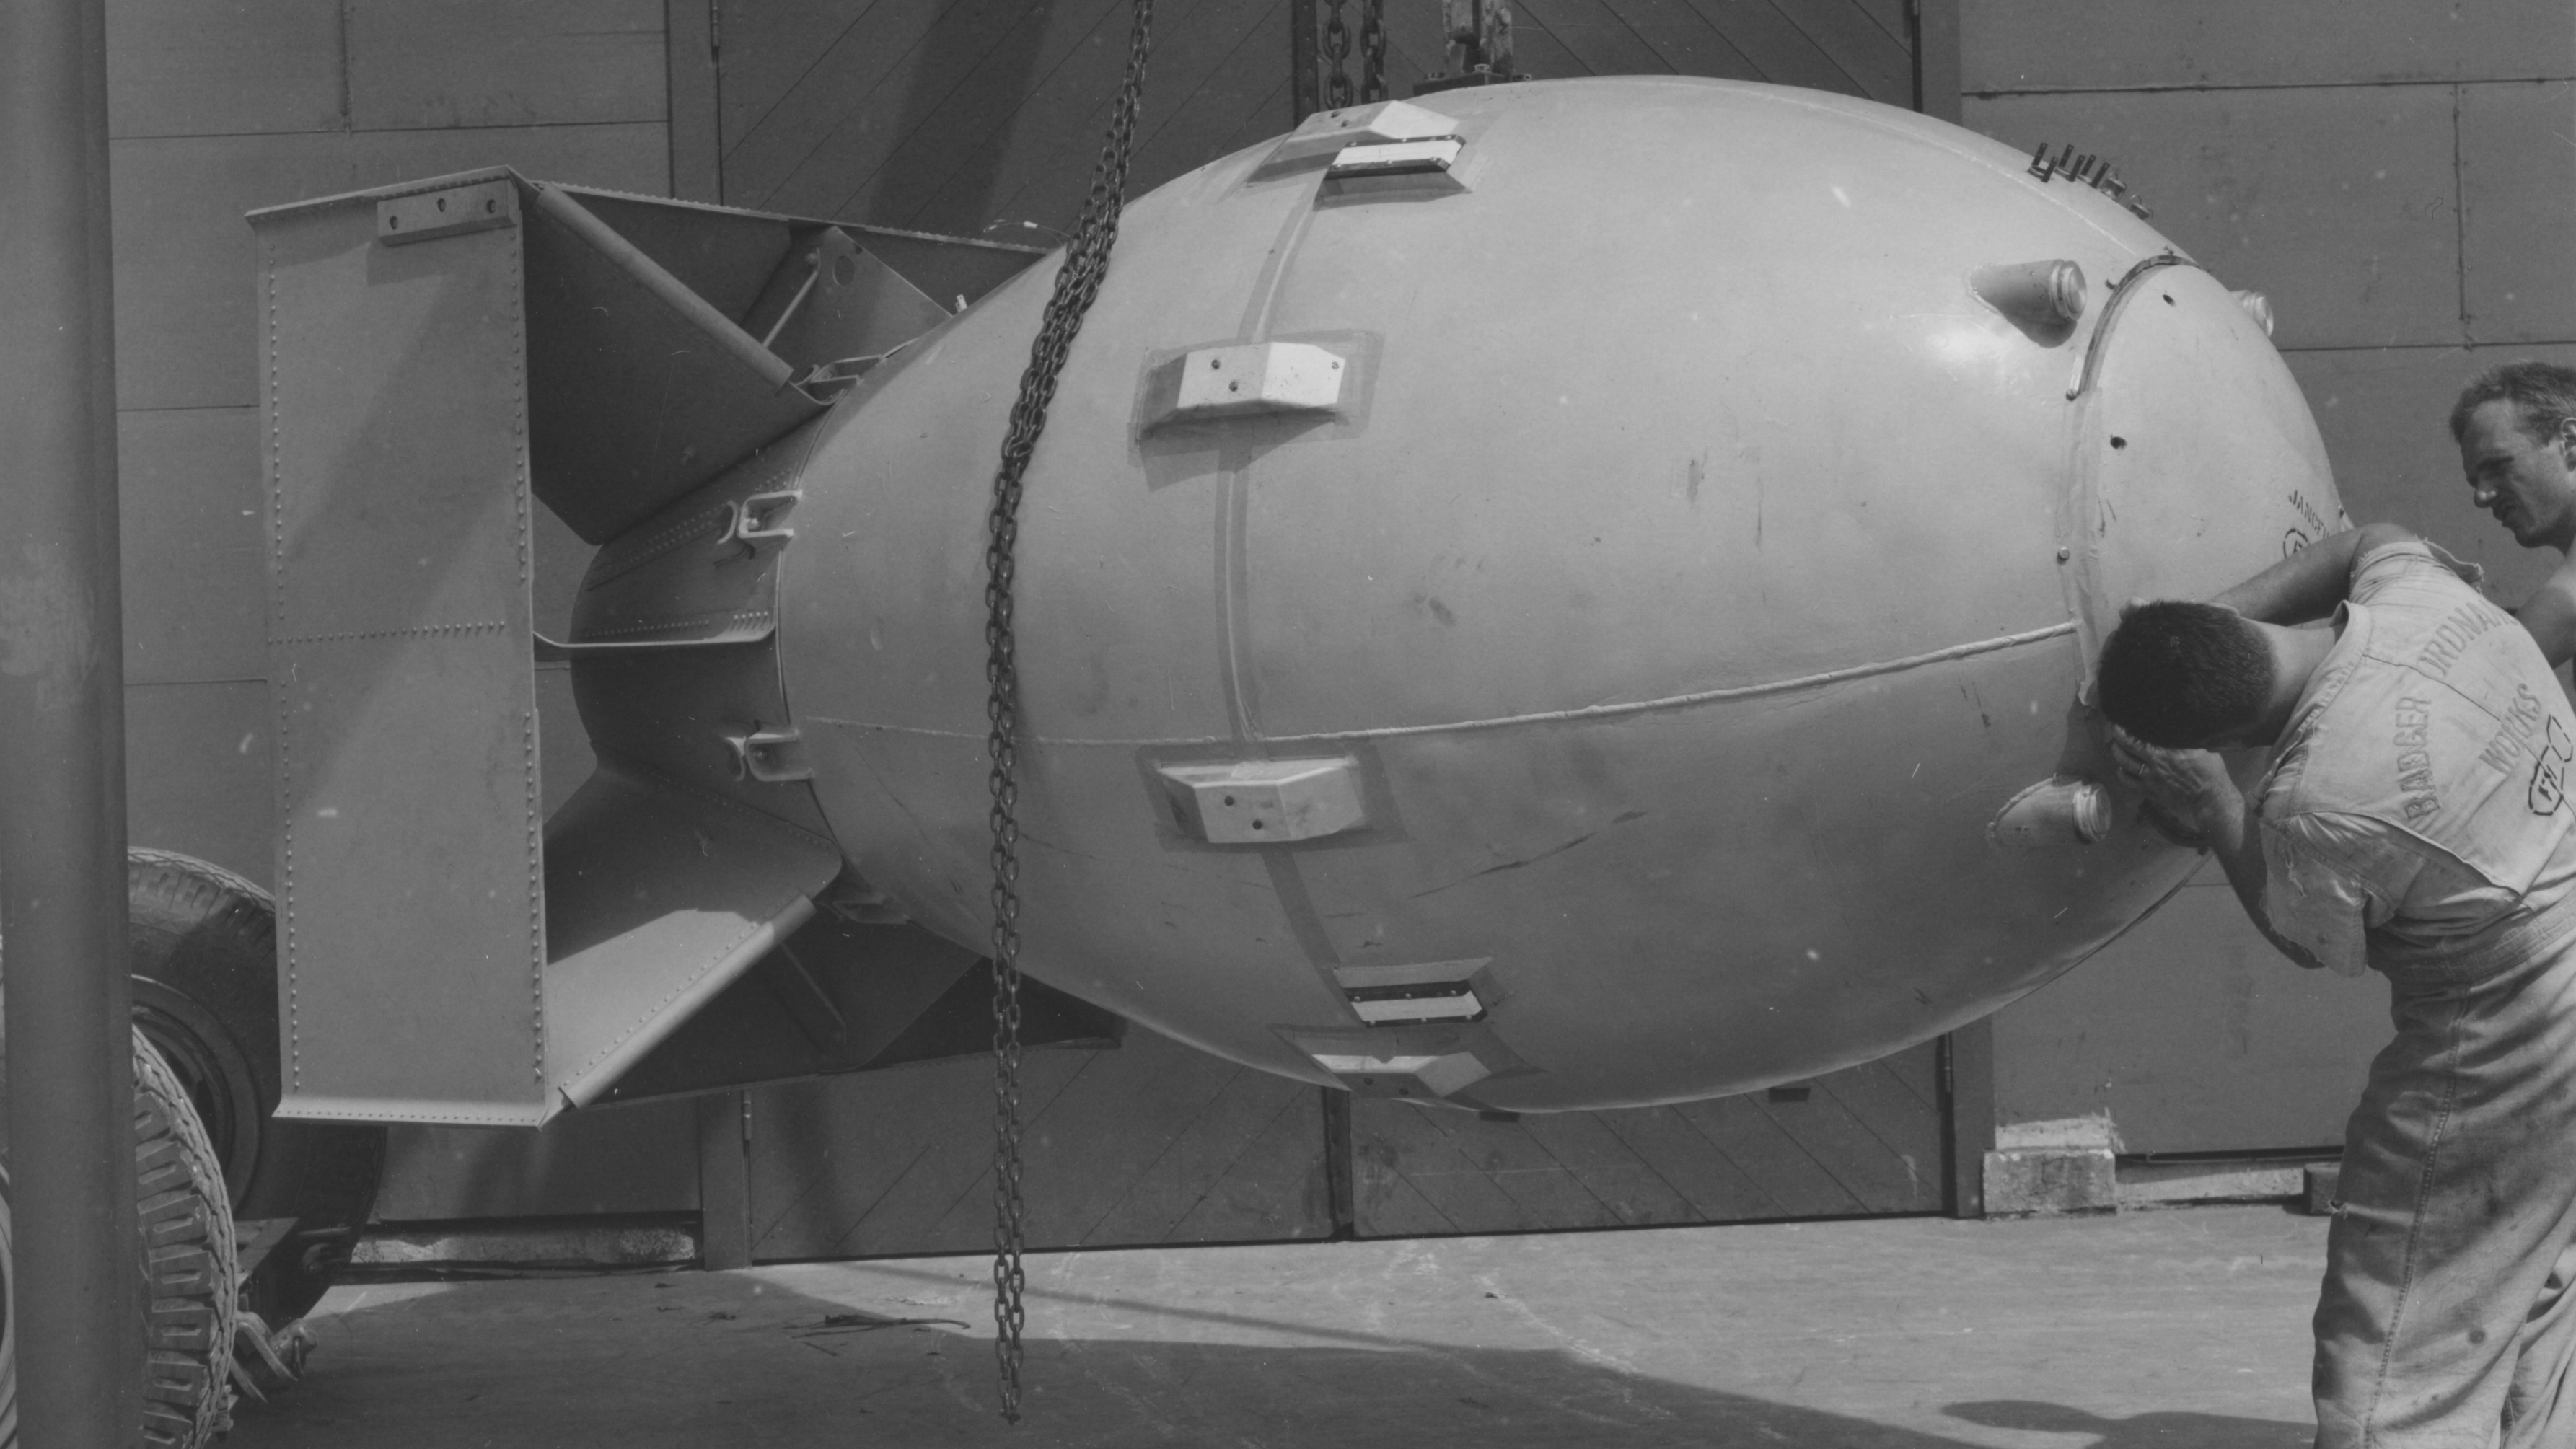 "Fat Man" bomb dropped on Nagasaki